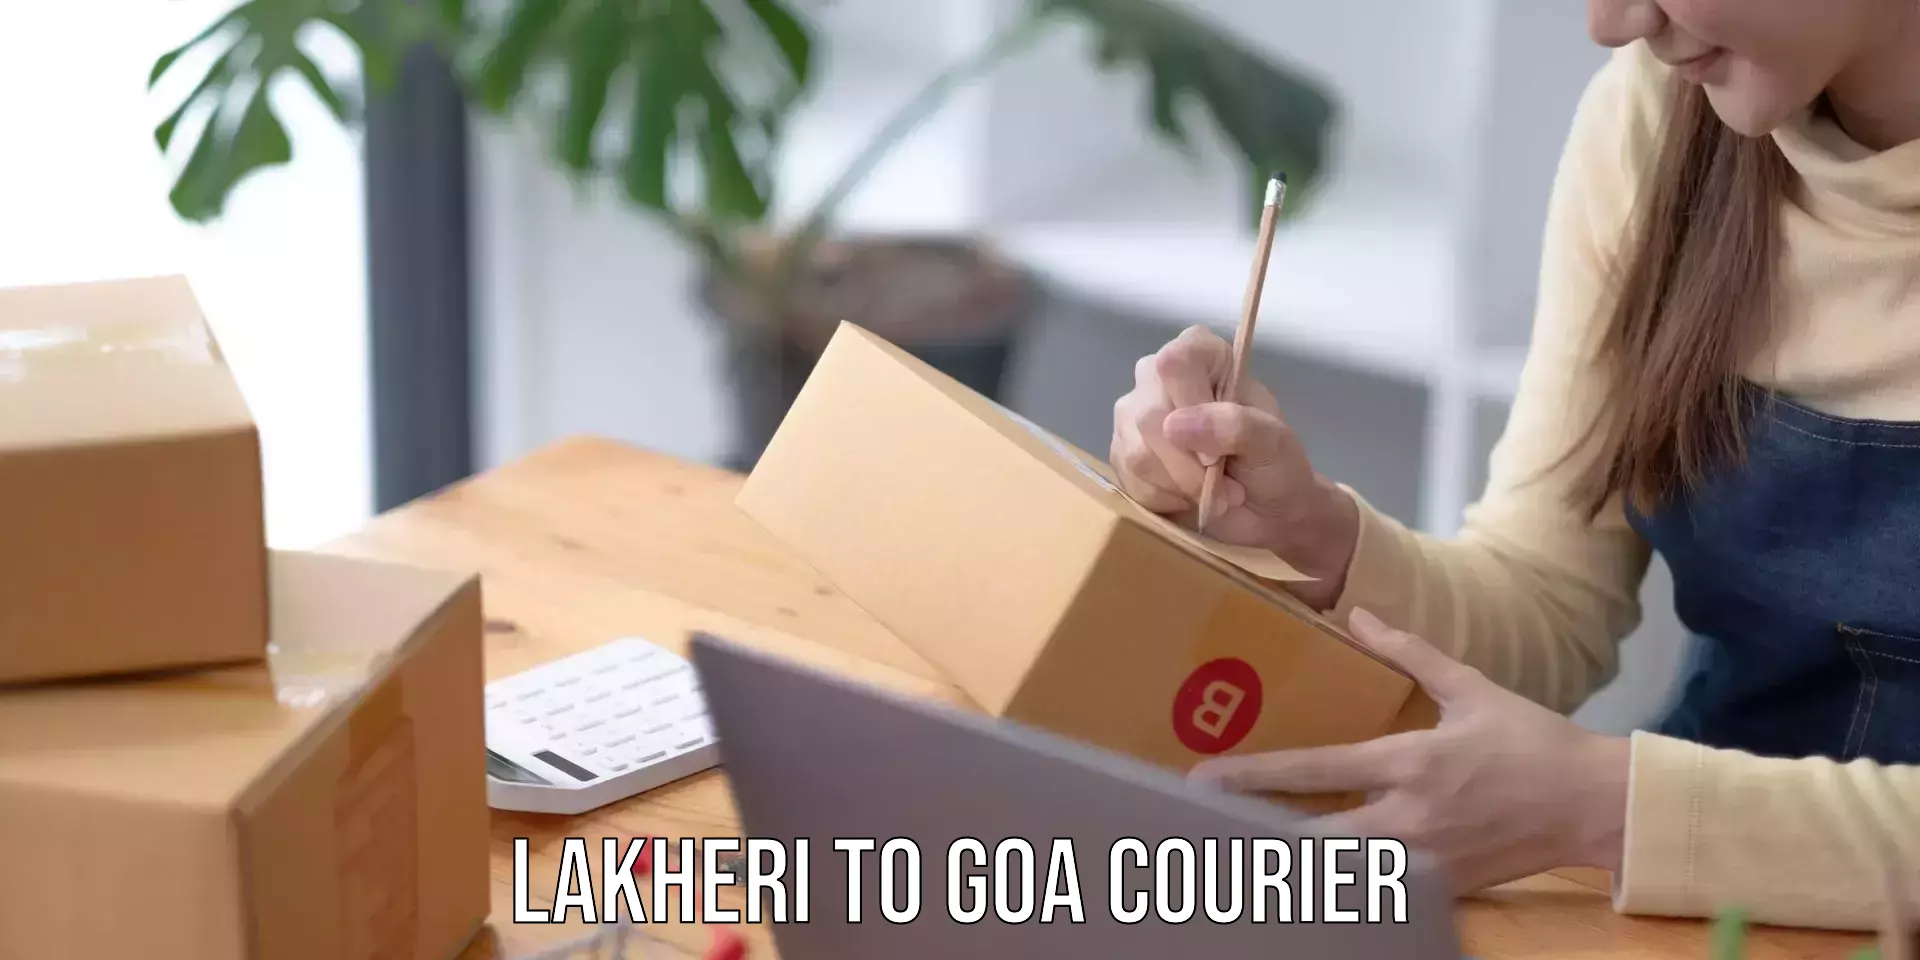 Courier app Lakheri to Vasco da Gama